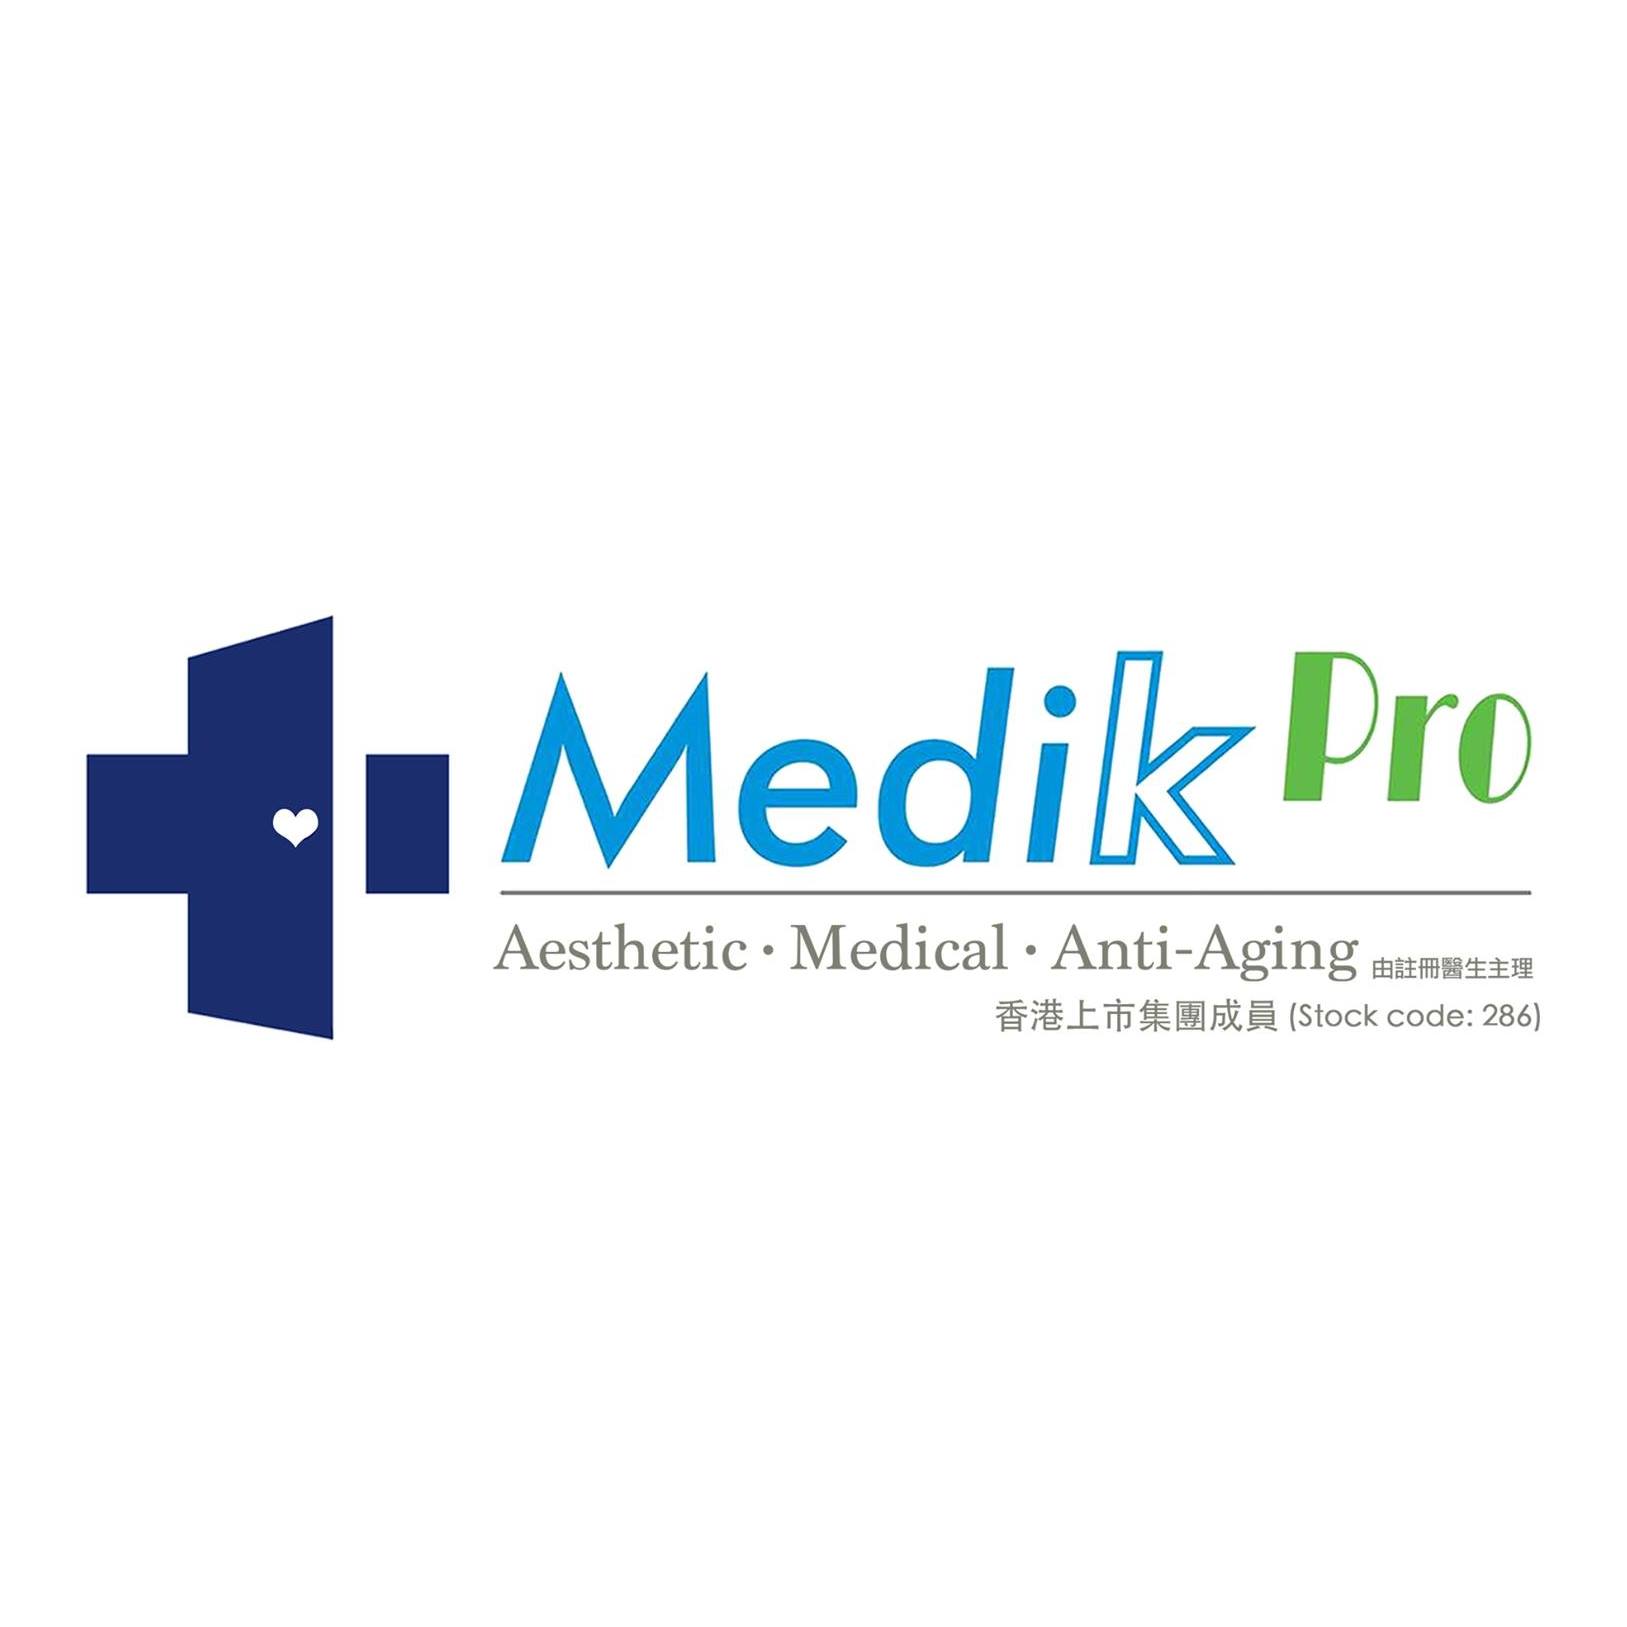 修眉/眼睫毛: Medik Pro (旺角分店)